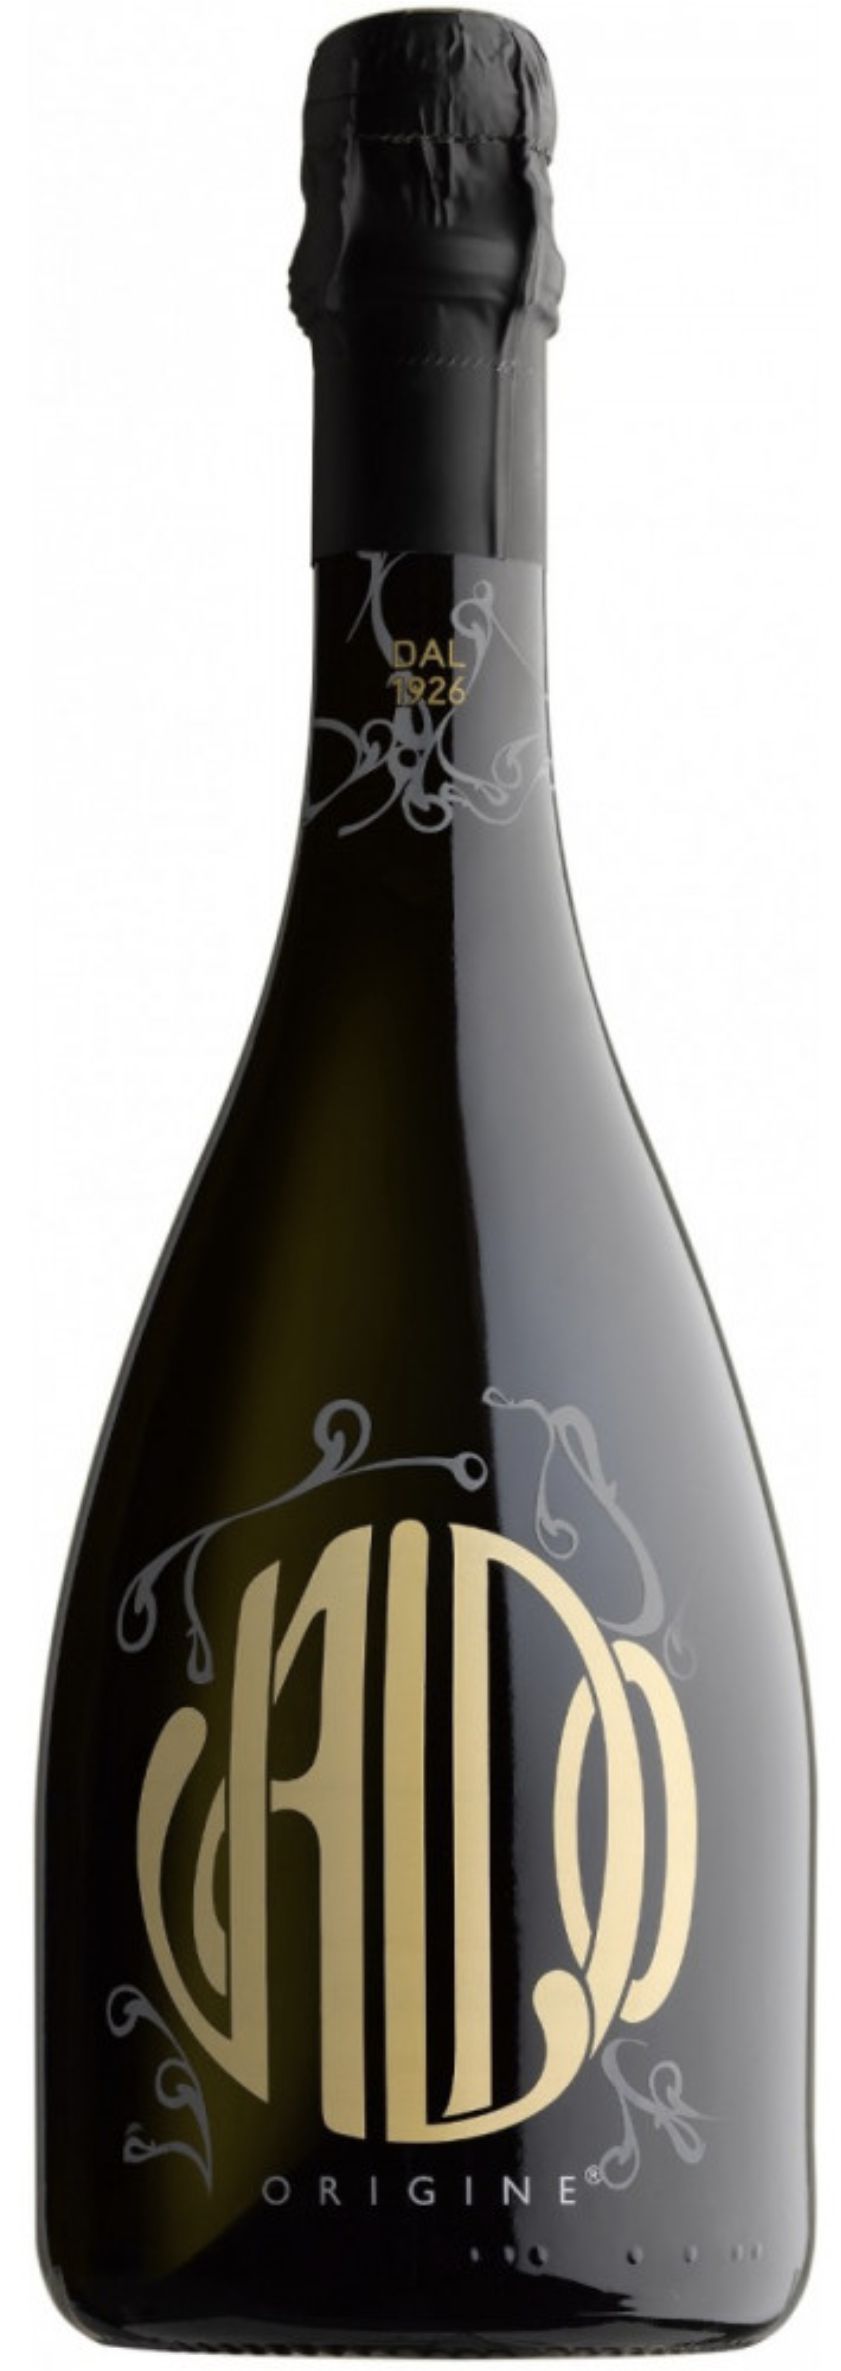 Игристое вино Вальдо "Ориджине", белое брют, 0.75 л